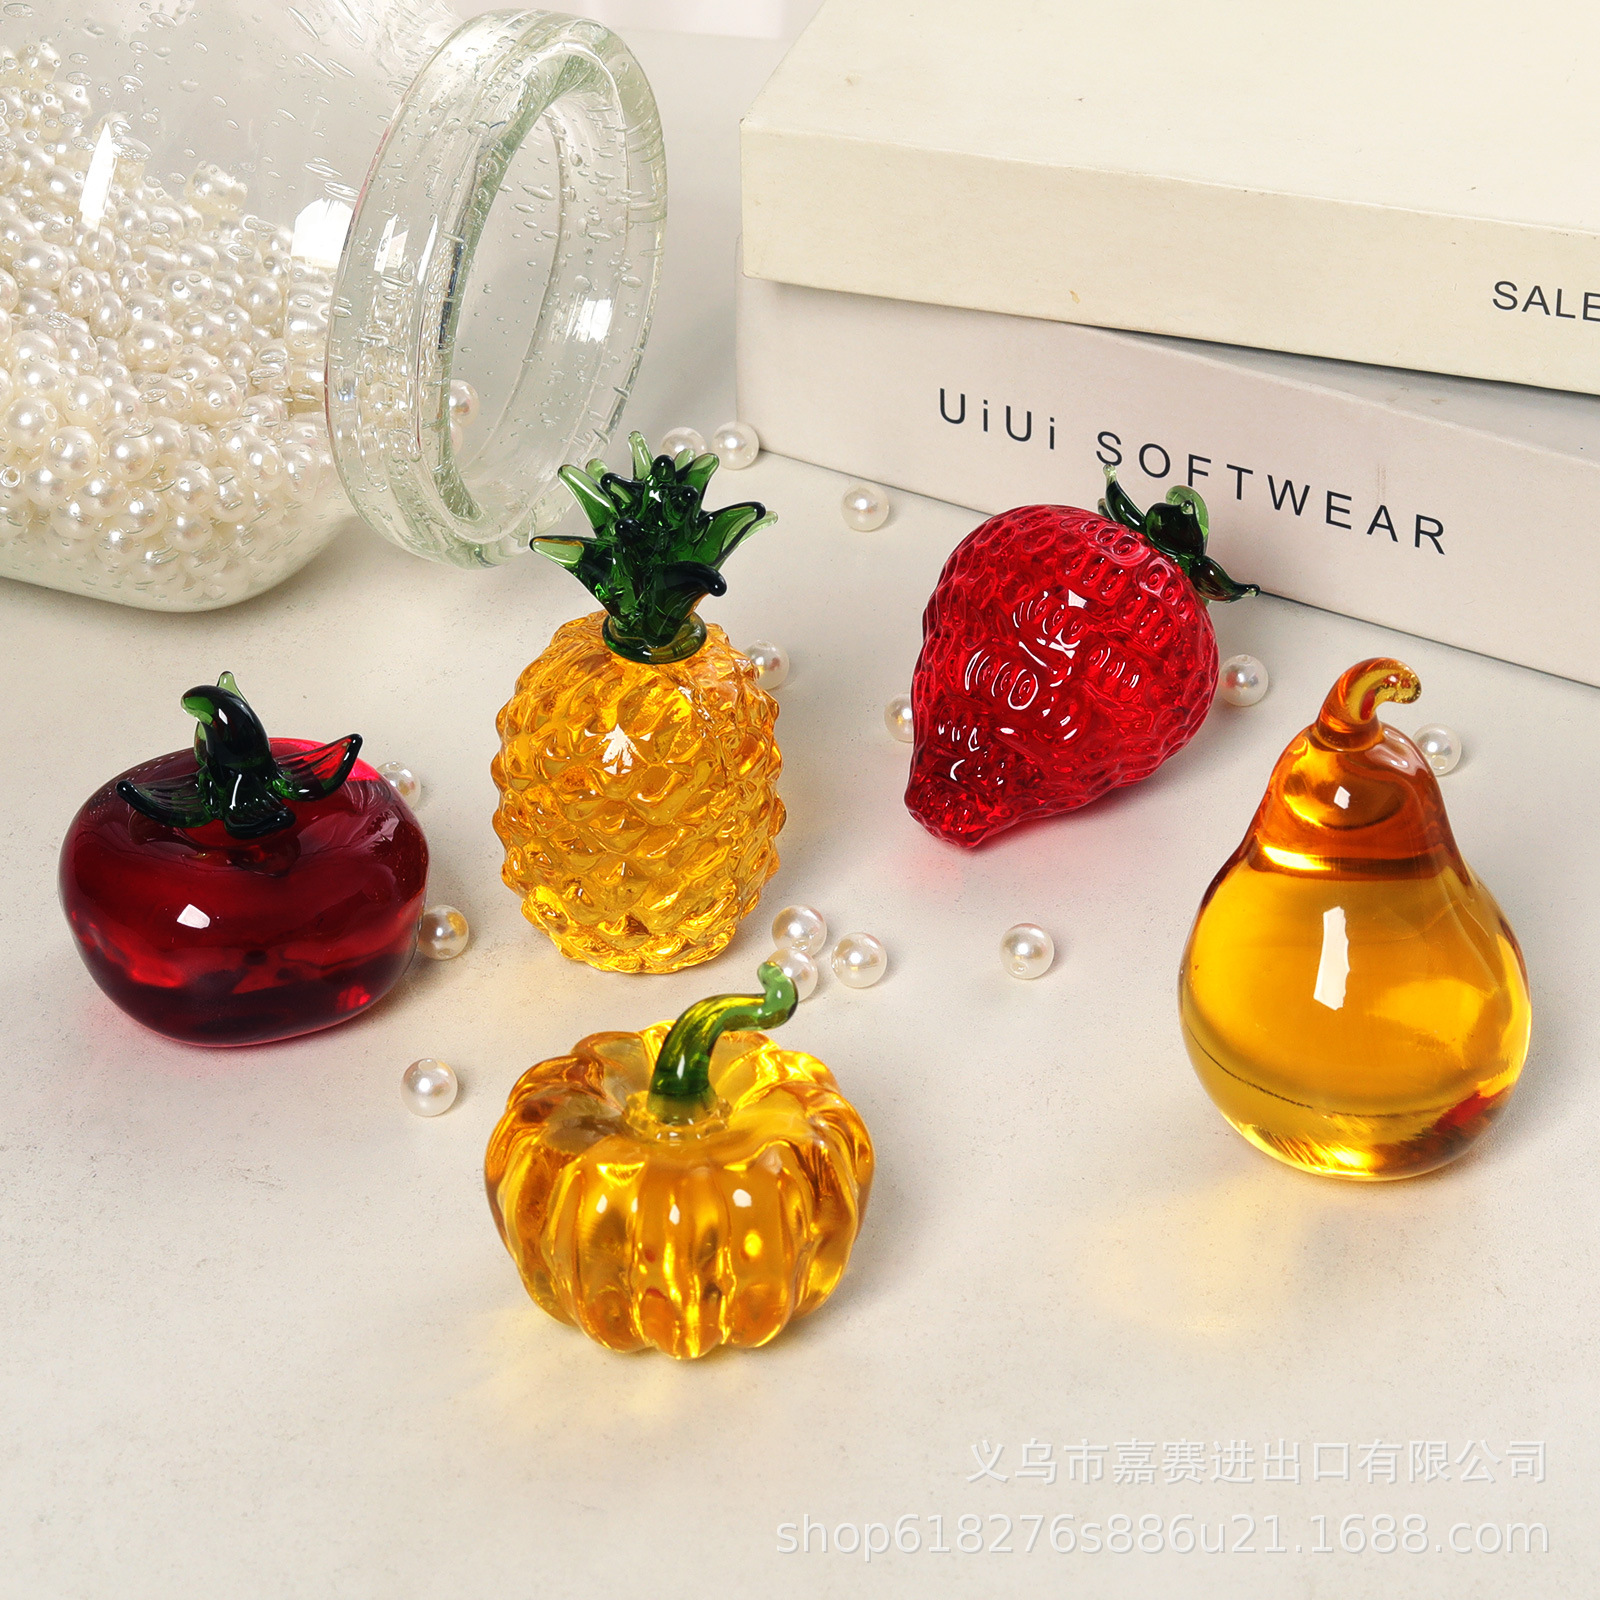 简约中式风格工艺品桌面水晶摆件南瓜草莓菠萝柿子粑粑柑水果拼盘